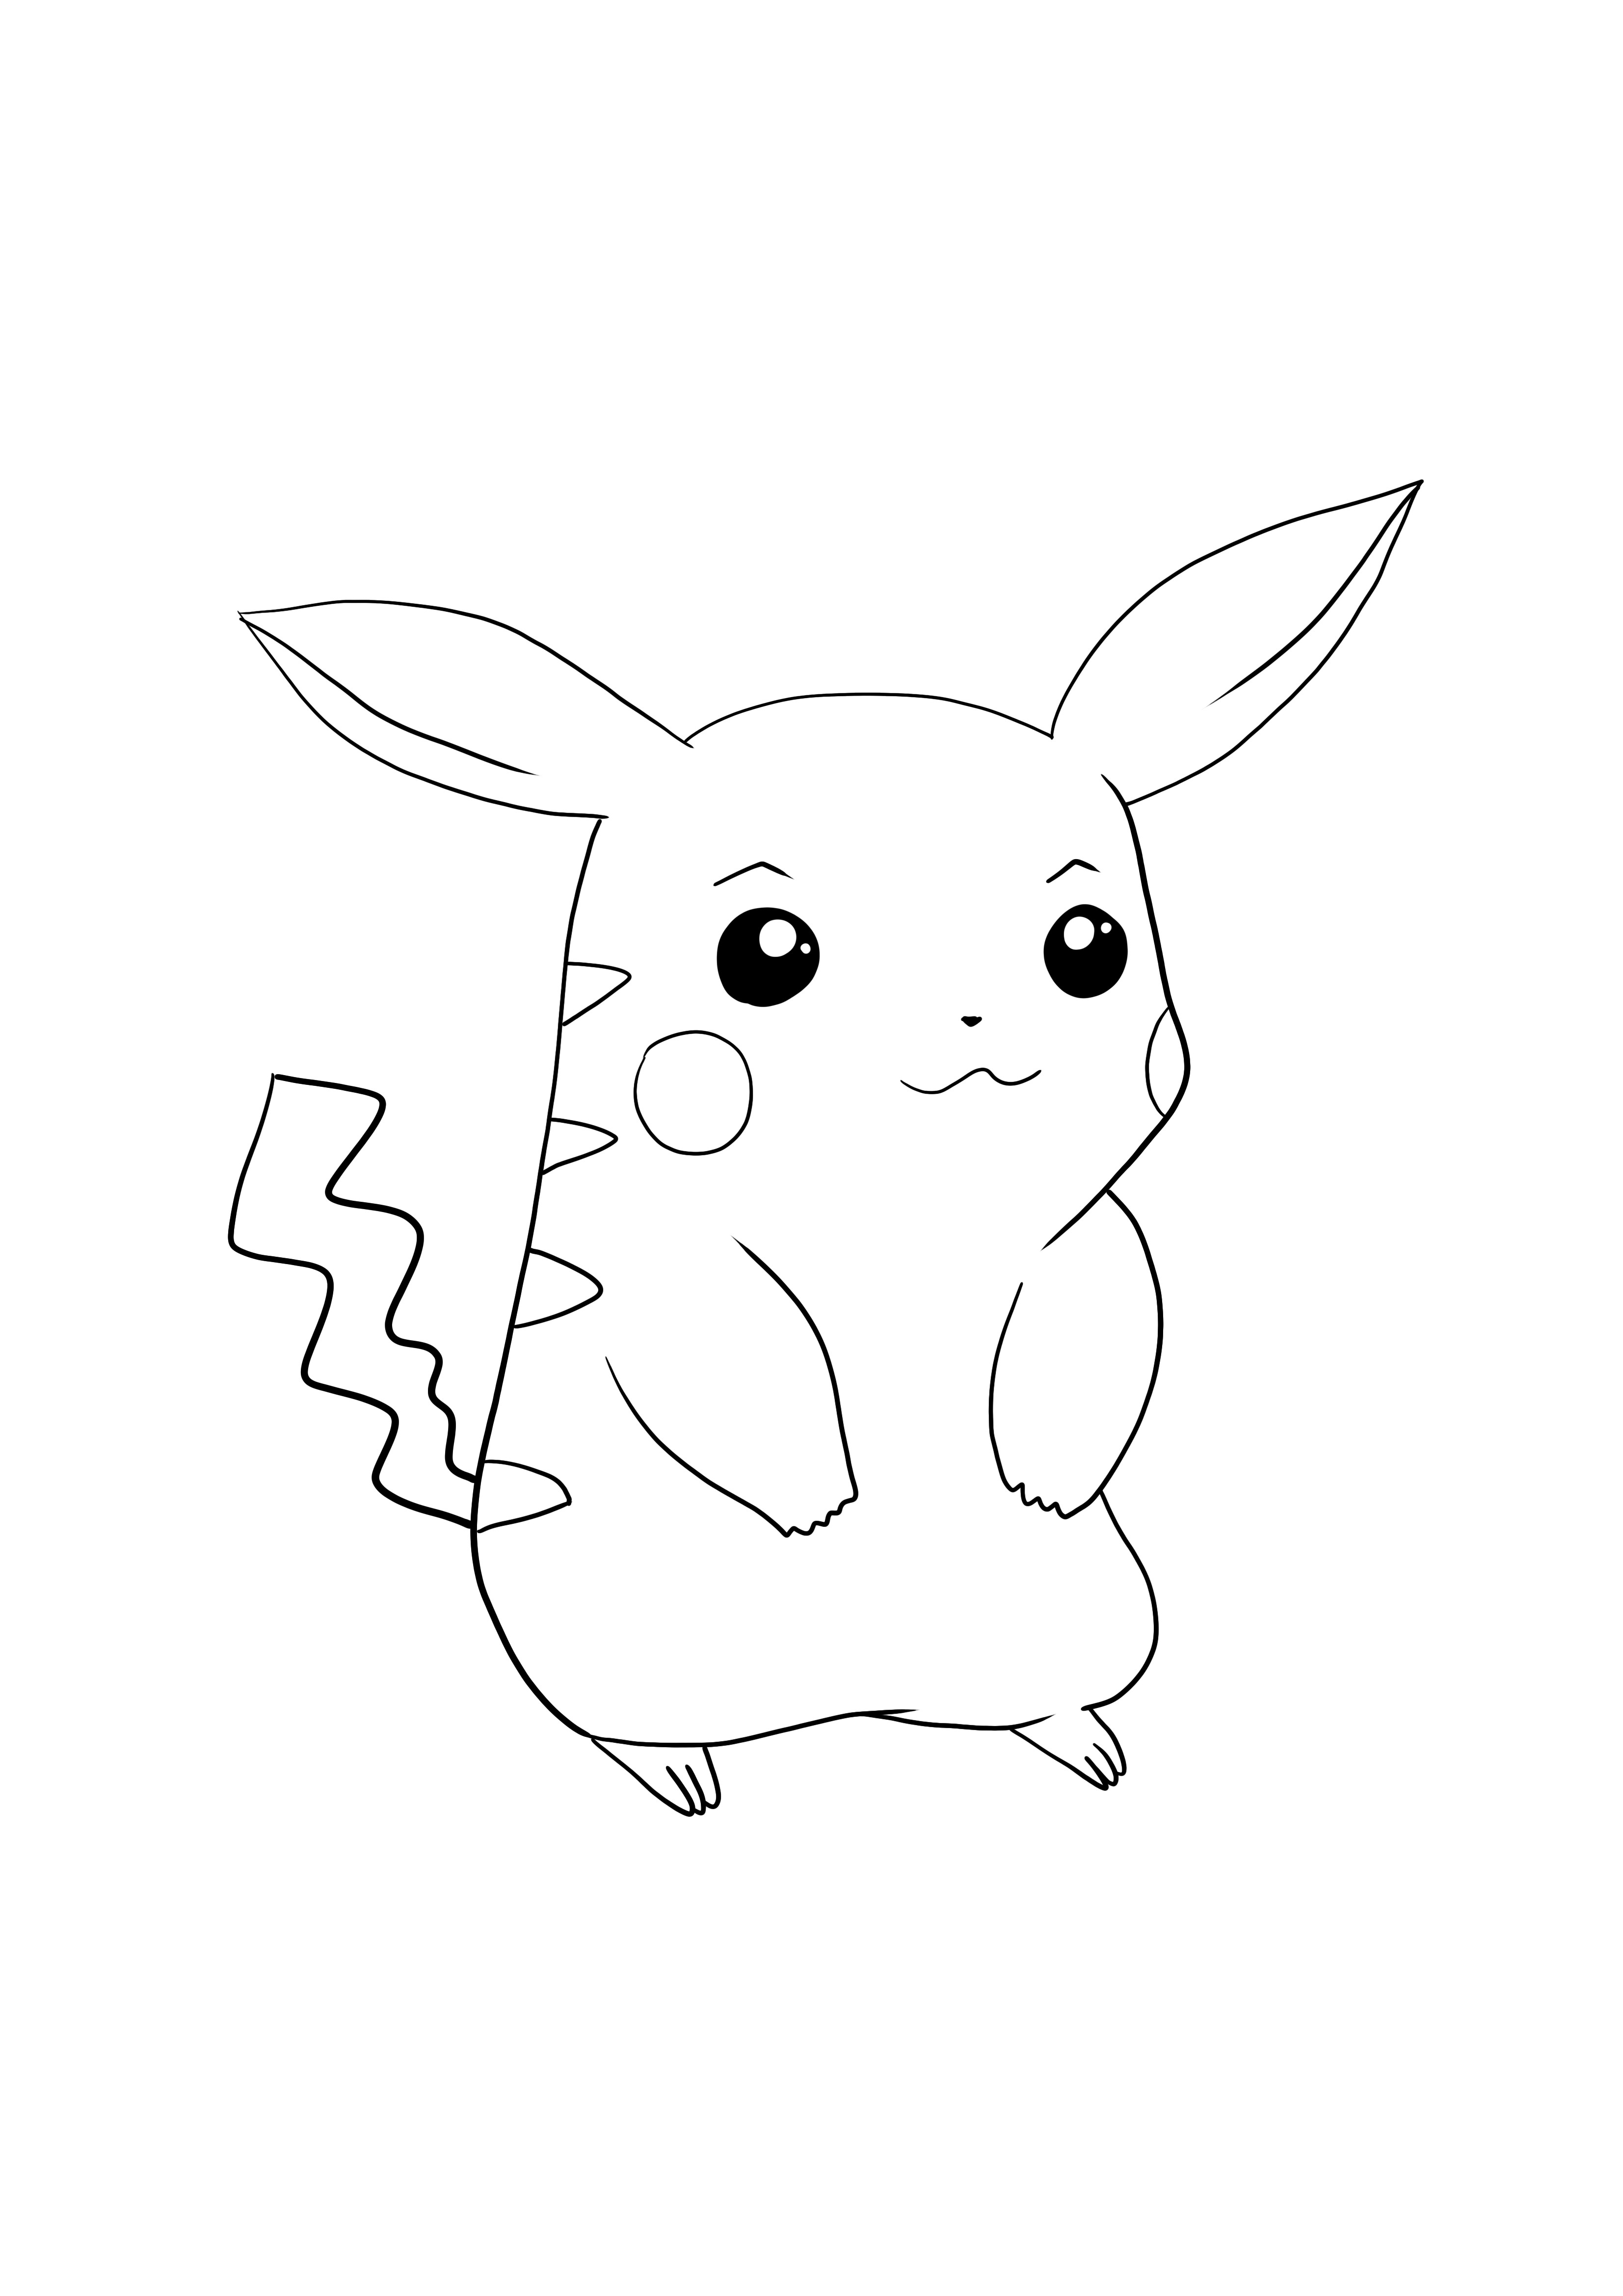 Pikachu-Pokémon go télécharger et colorier la page gratuitement